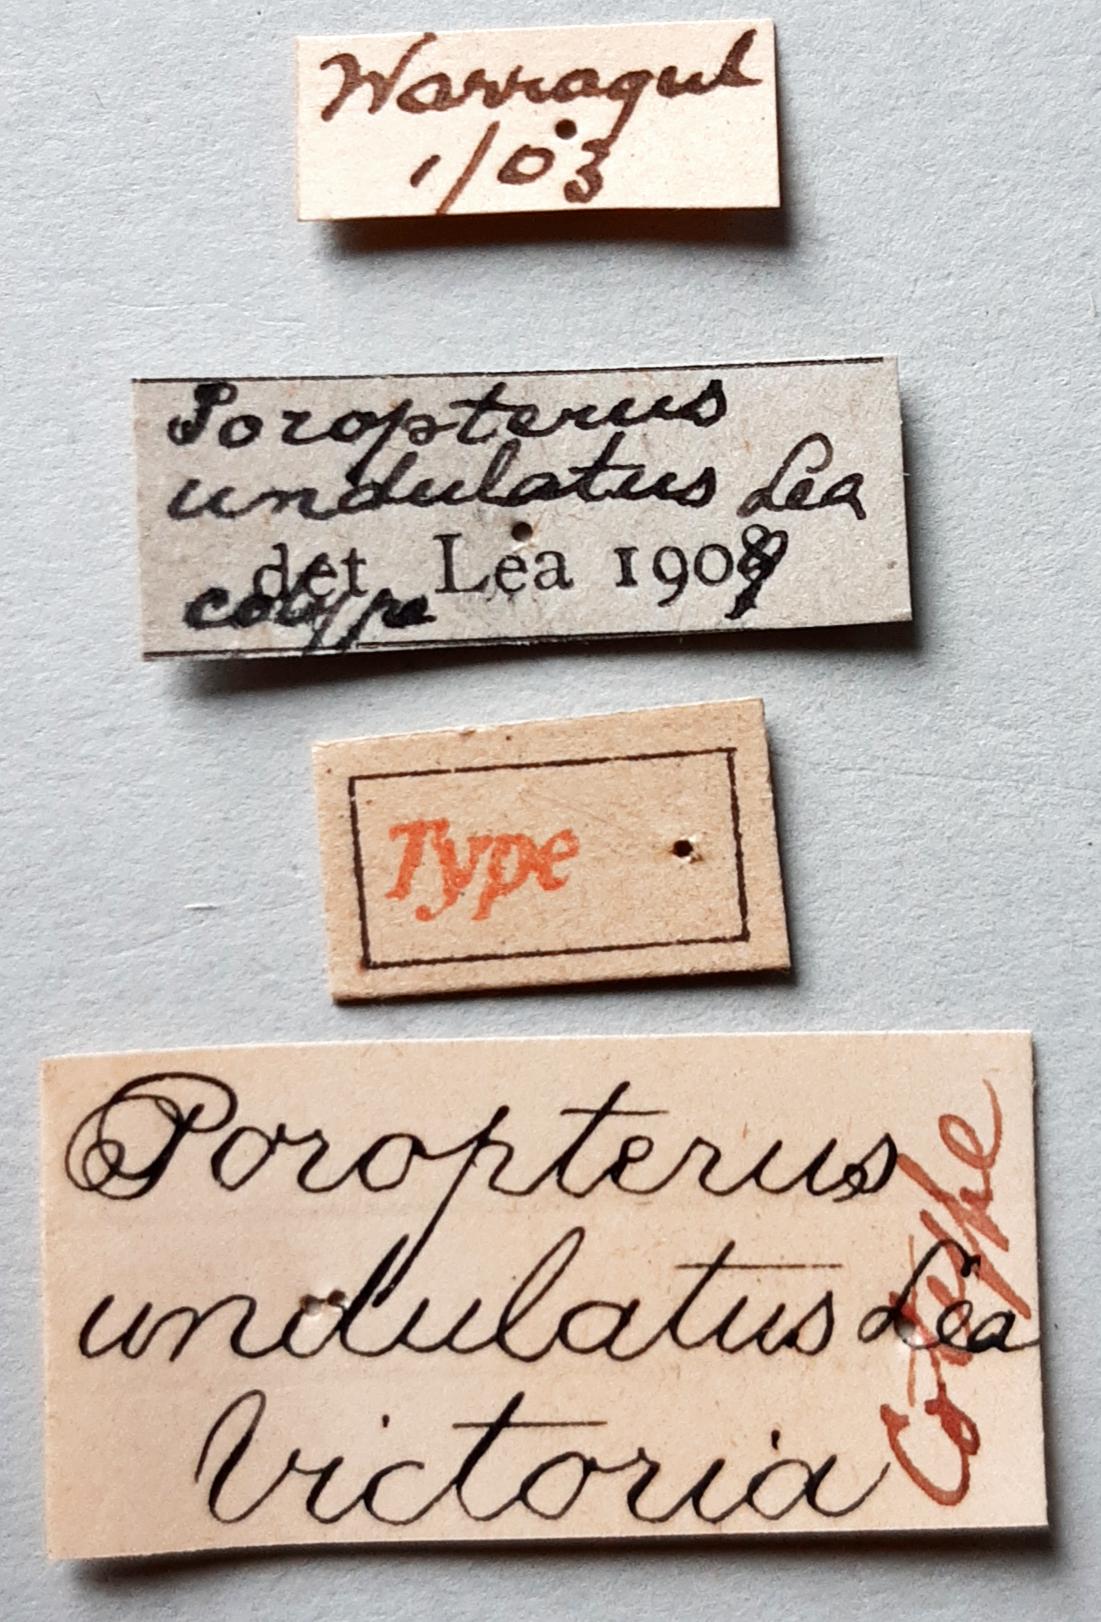 Poropterus undulatus Ht labels